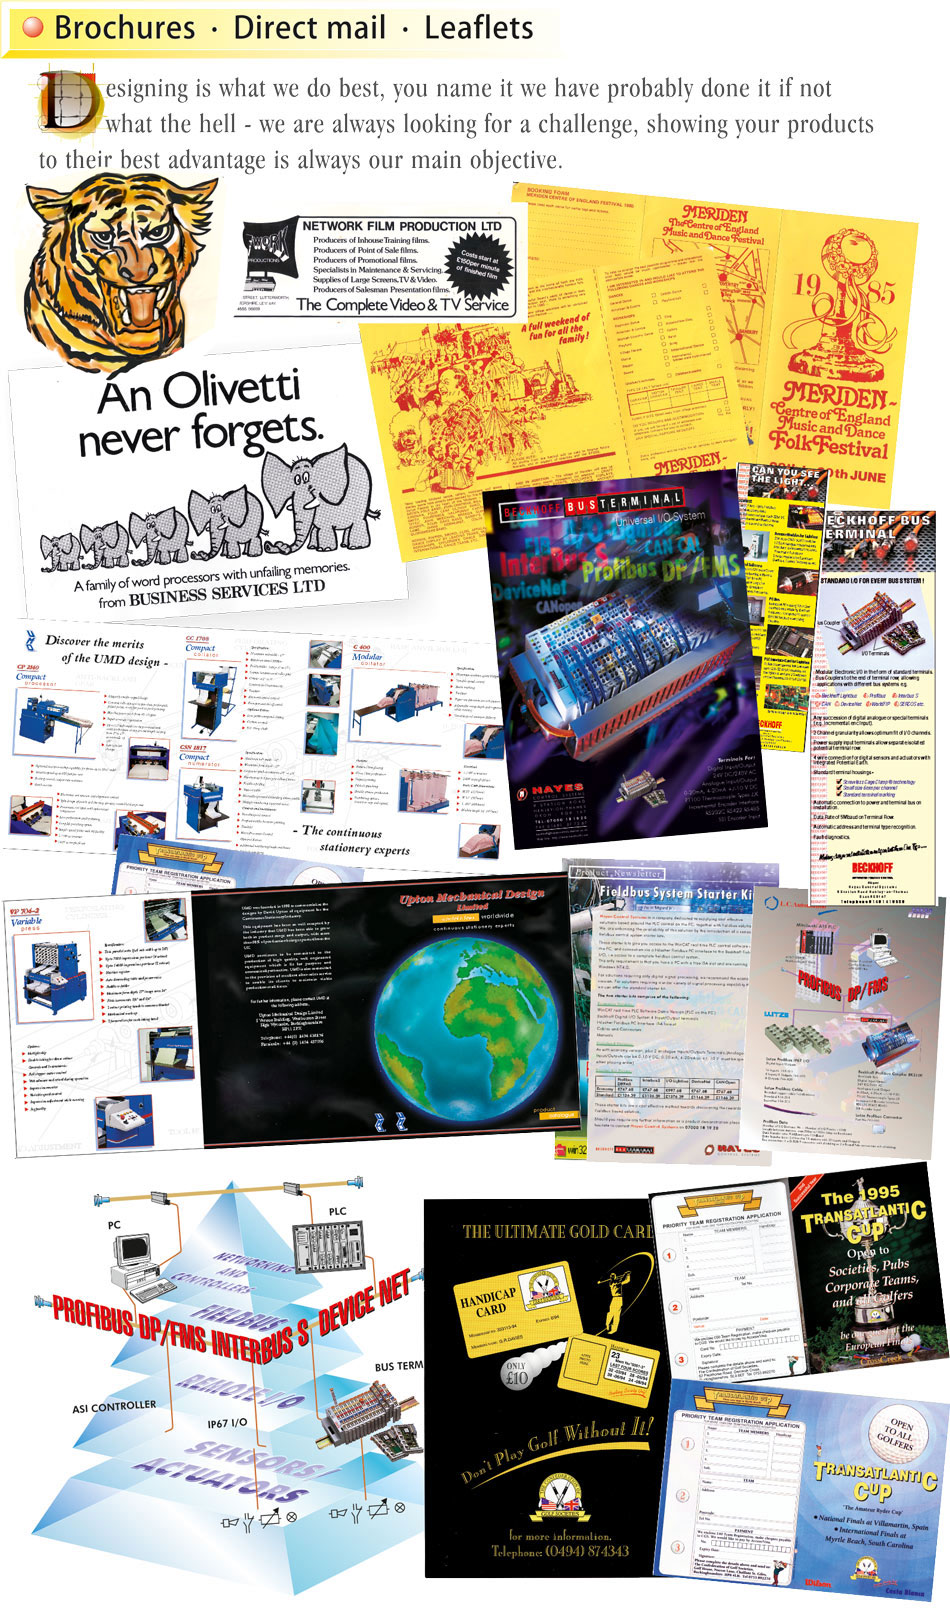 Brochures Direct Mail Leaflets